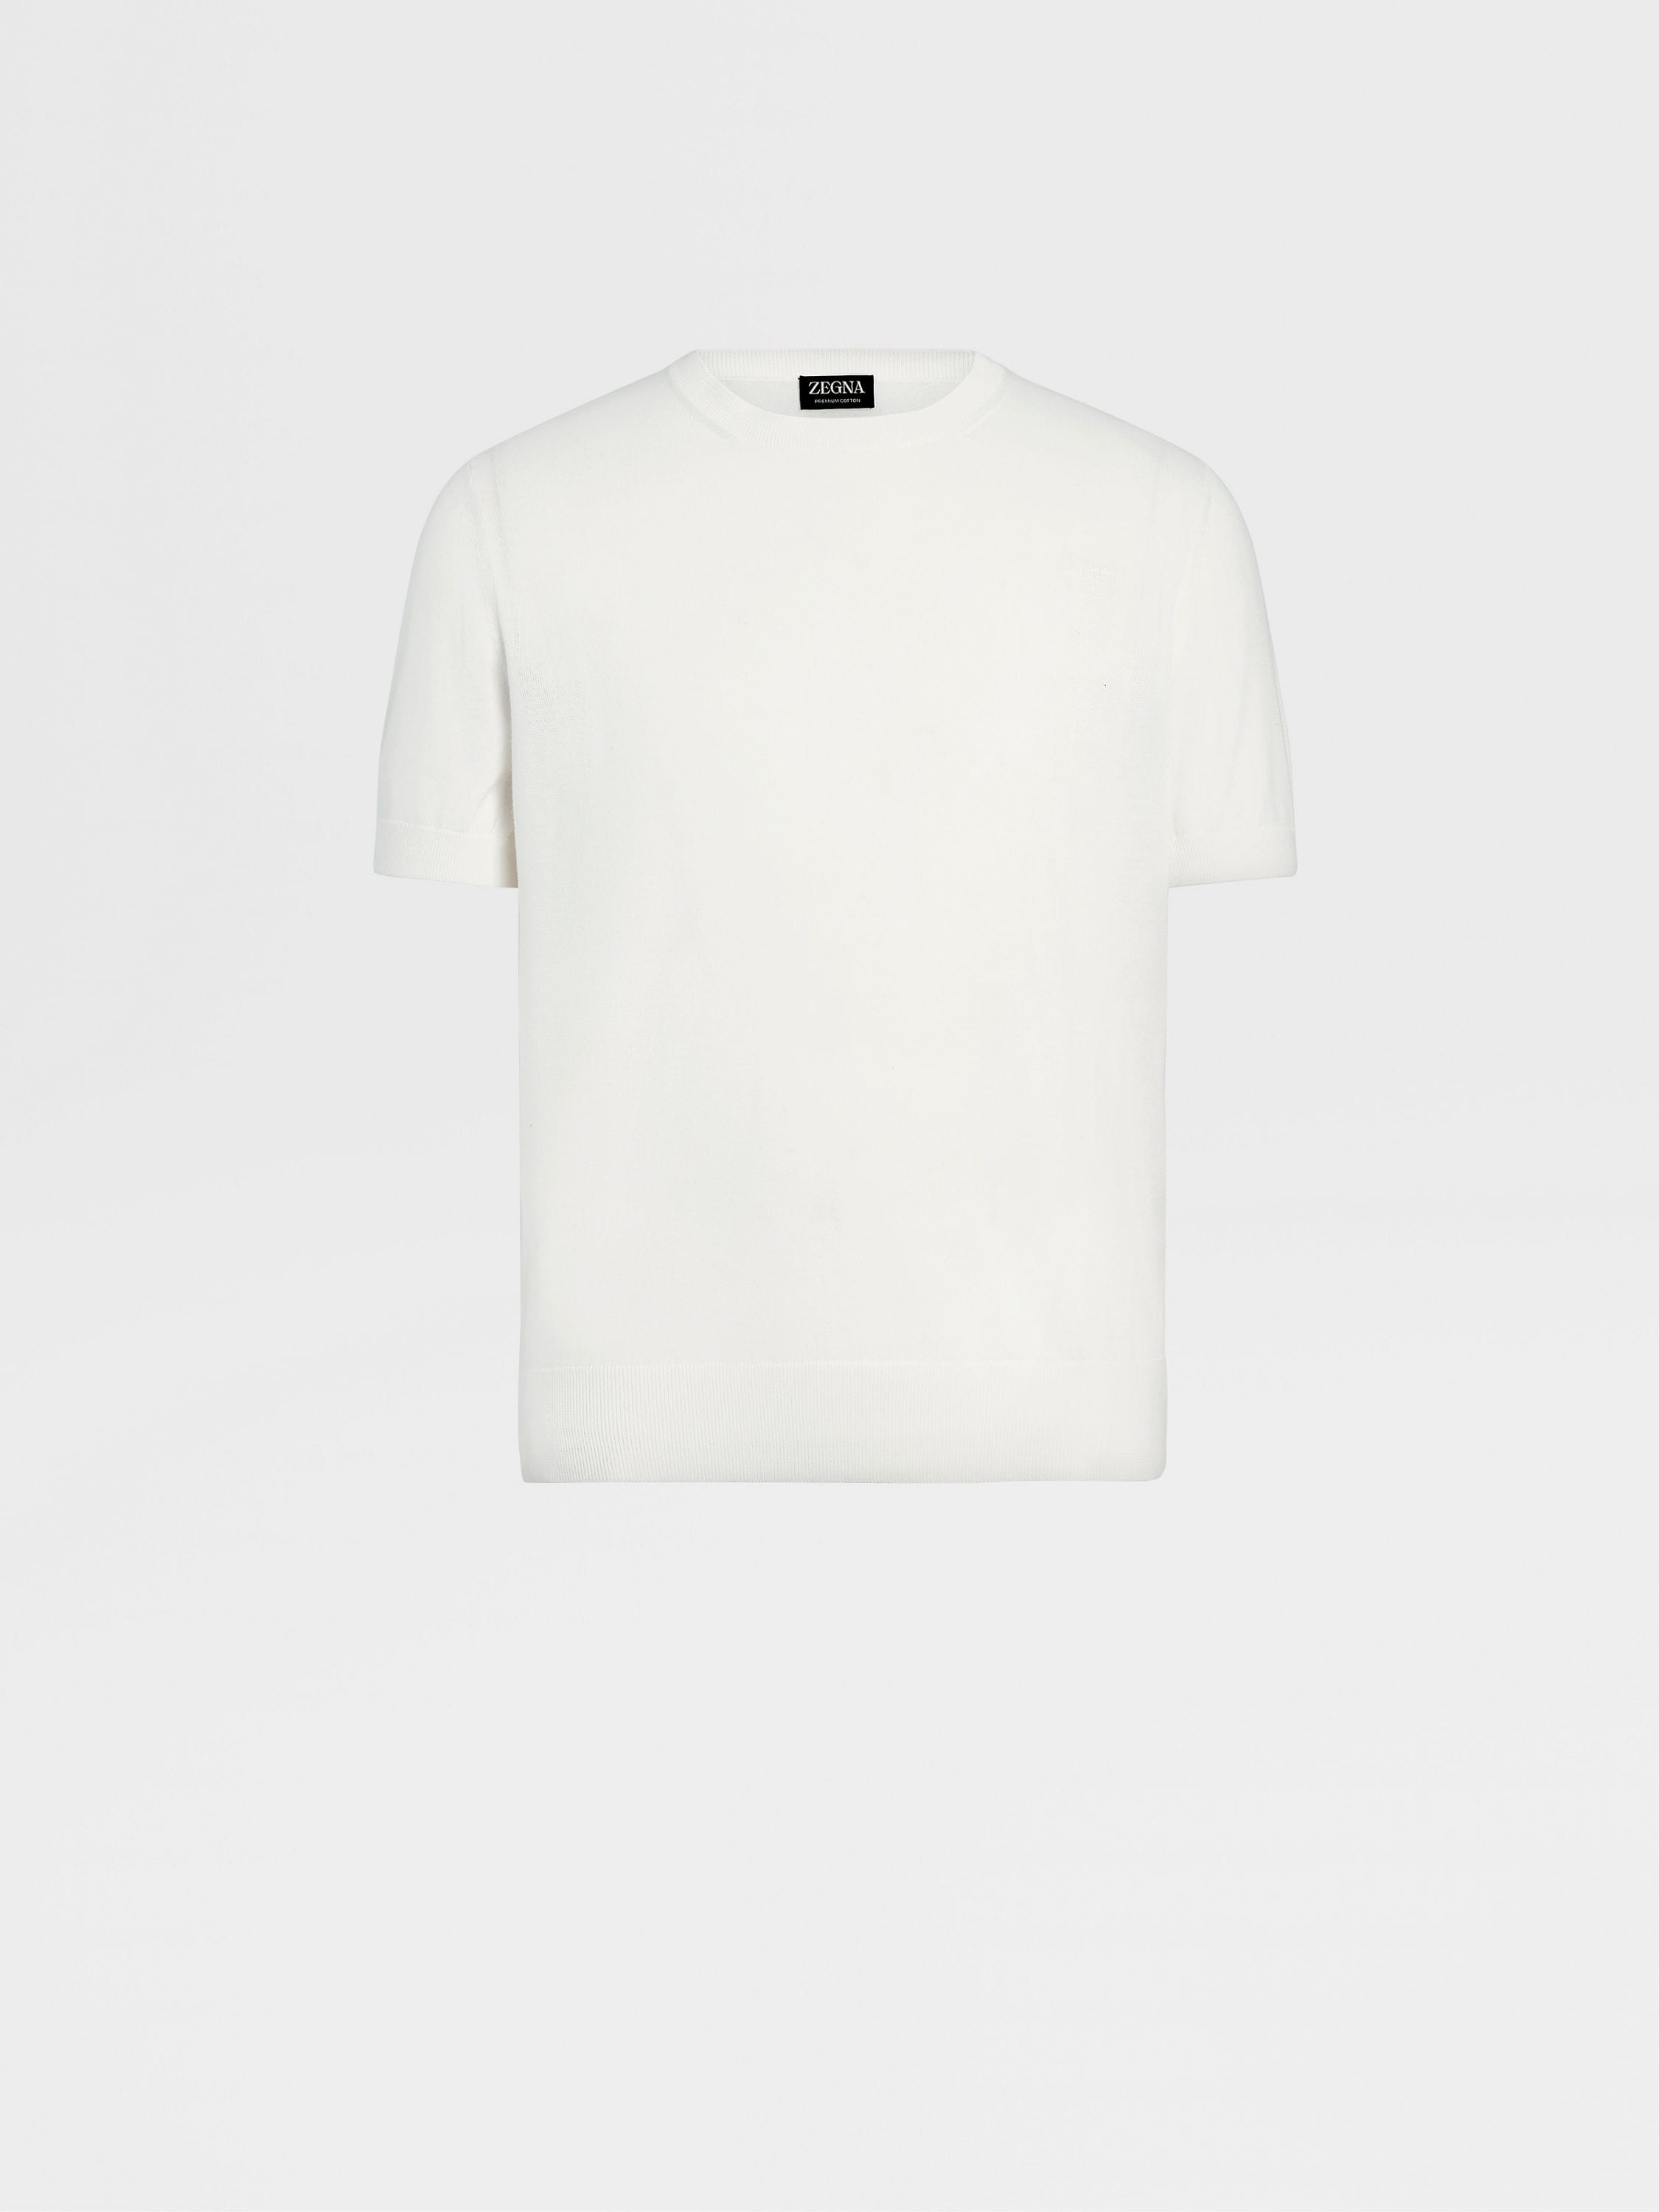 White Premium Cotton T-shirt FW23 27902813 | Zegna US